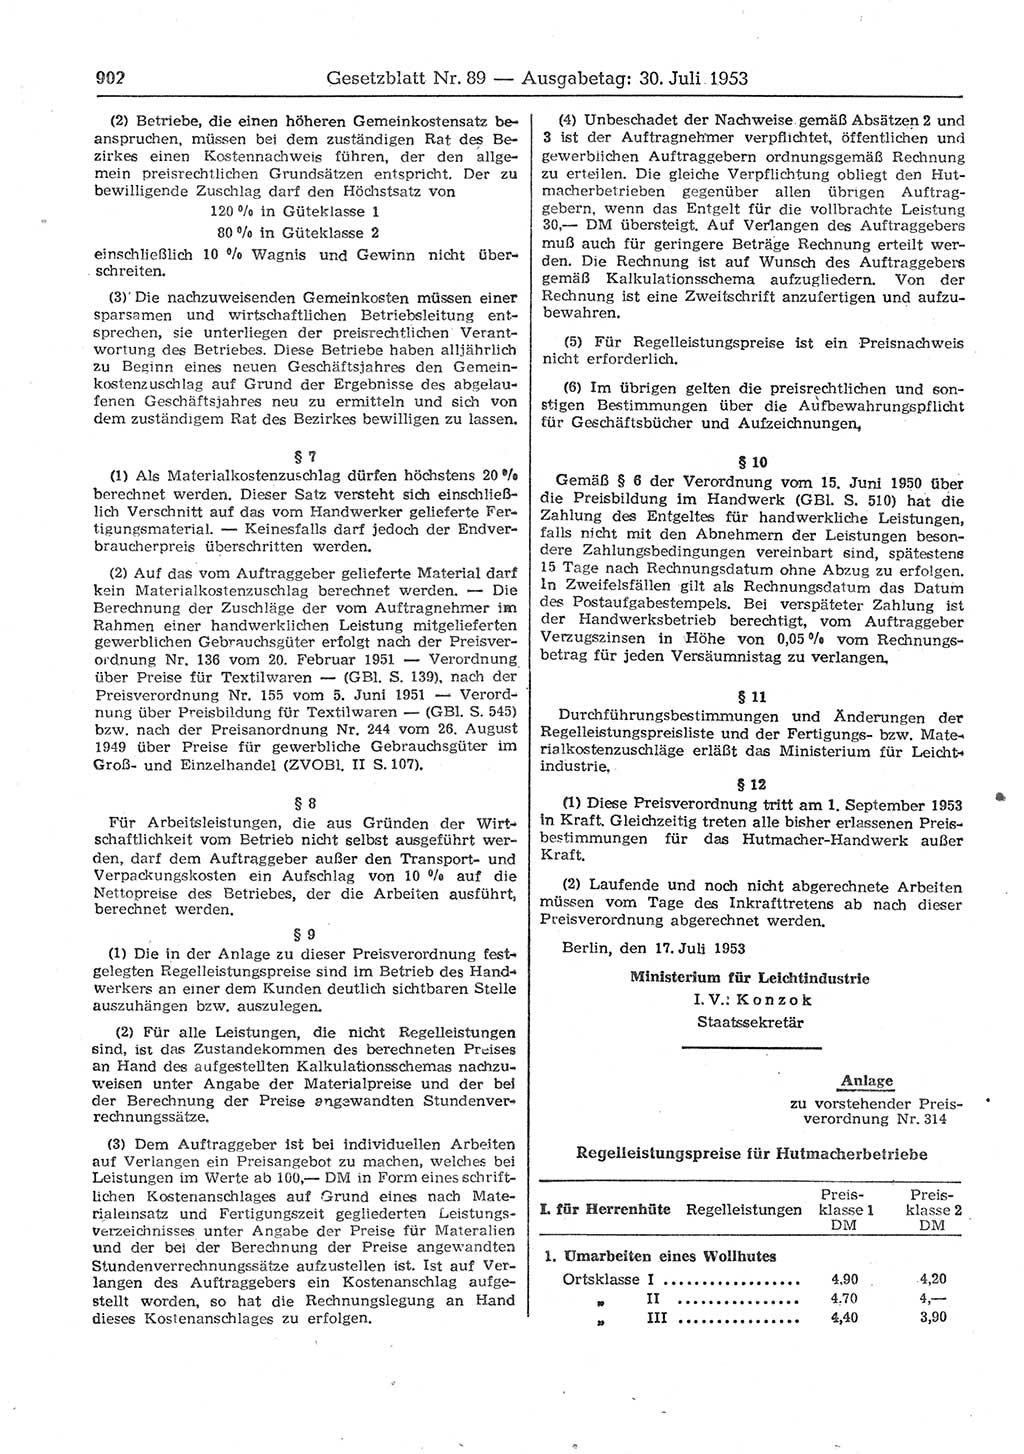 Gesetzblatt (GBl.) der Deutschen Demokratischen Republik (DDR) 1953, Seite 902 (GBl. DDR 1953, S. 902)